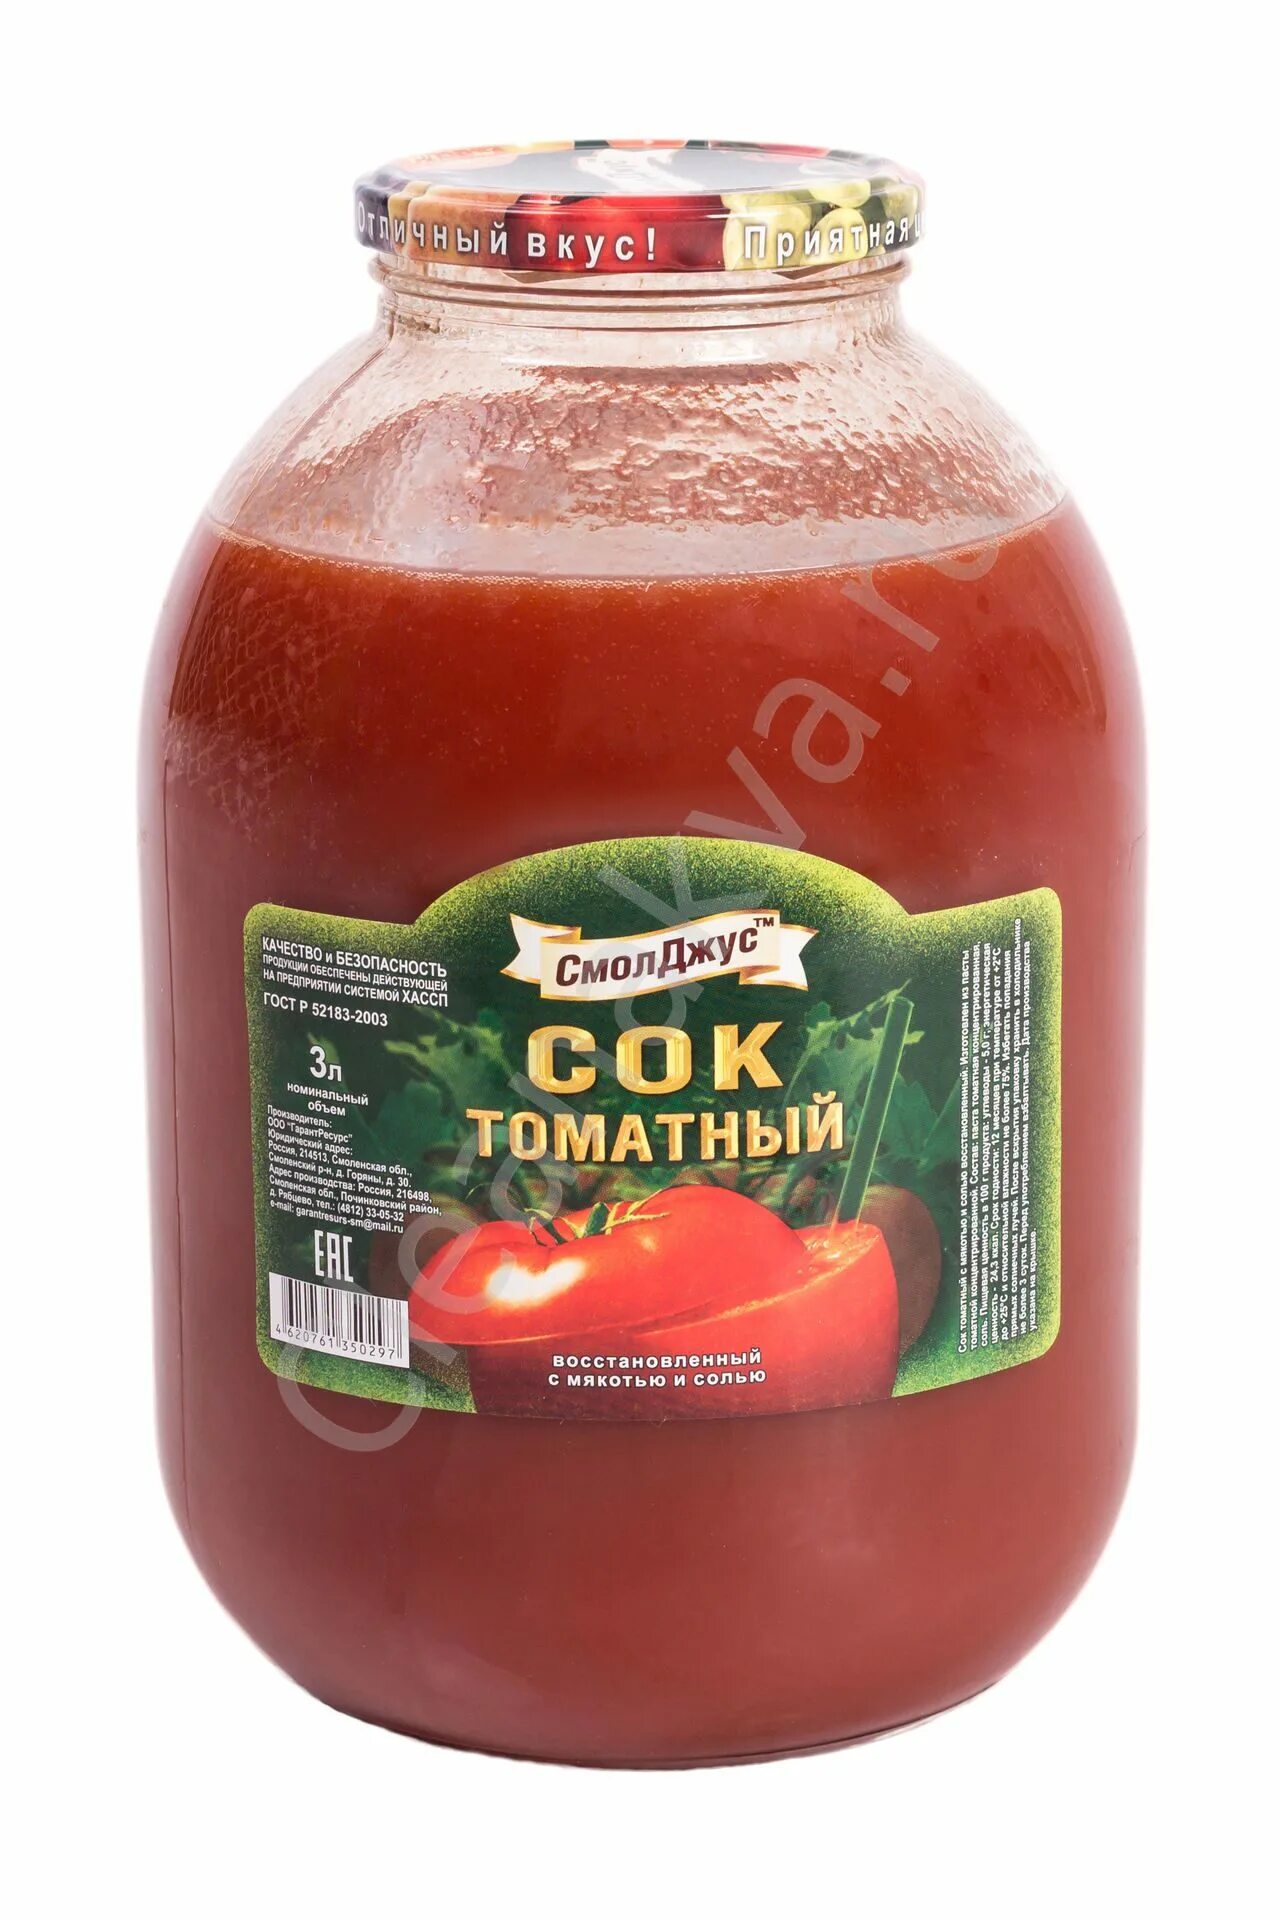 Сок томатный 3 литра. Сок томатный московские соки 3 литра. Сок Smart томатный 3л. Тихорецкий сок томатный 3 литра. Сок в банке 3 литра